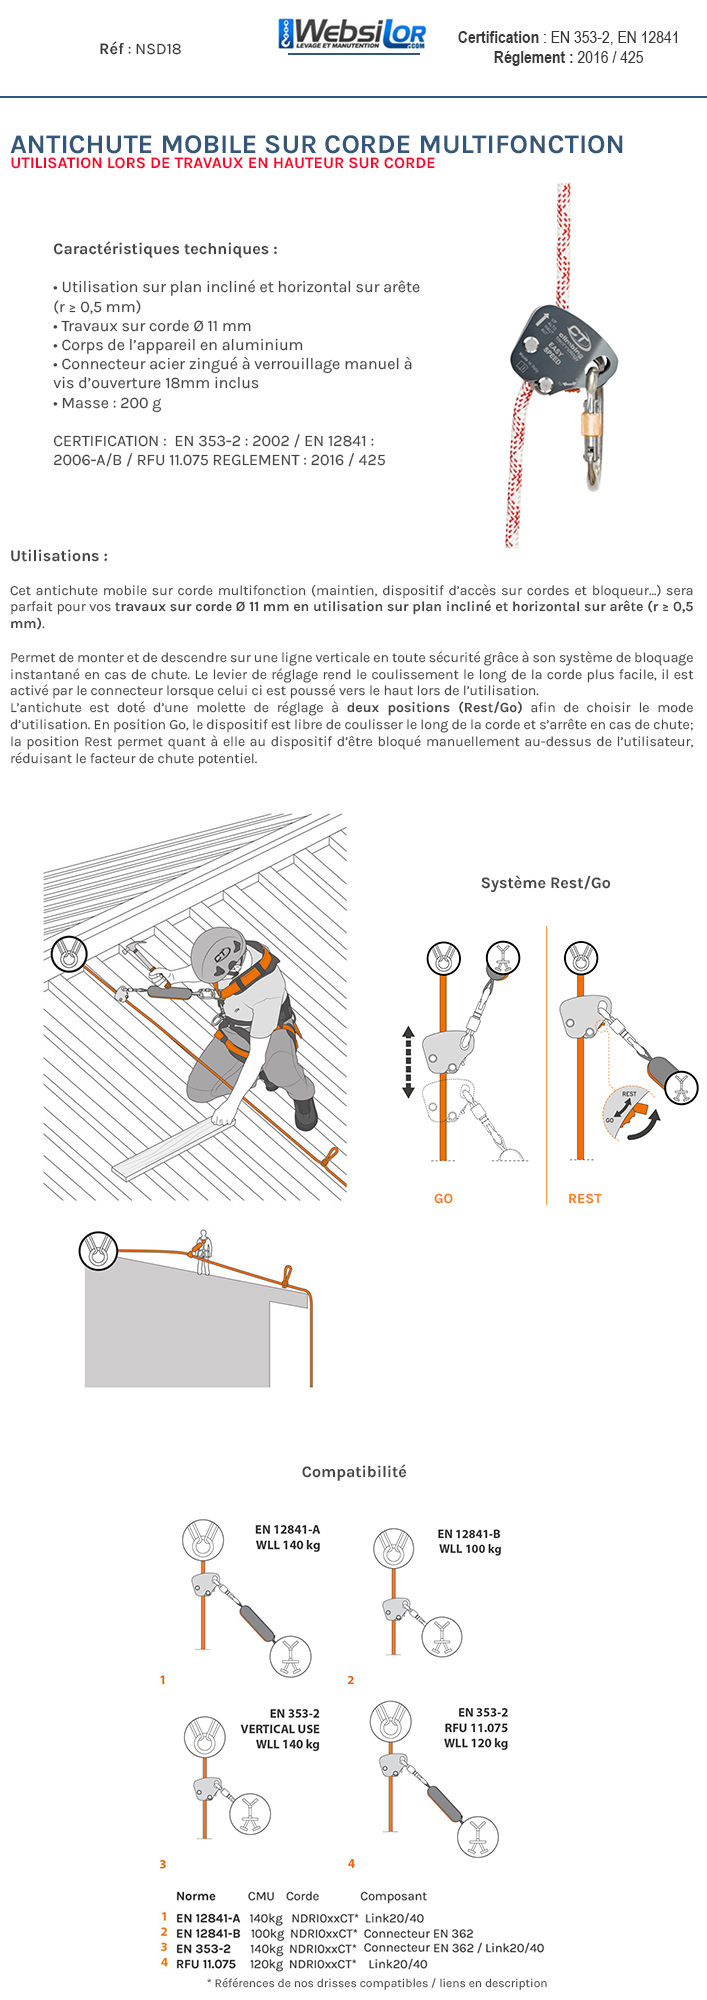 Informations techniques Antichute mobile sur corde